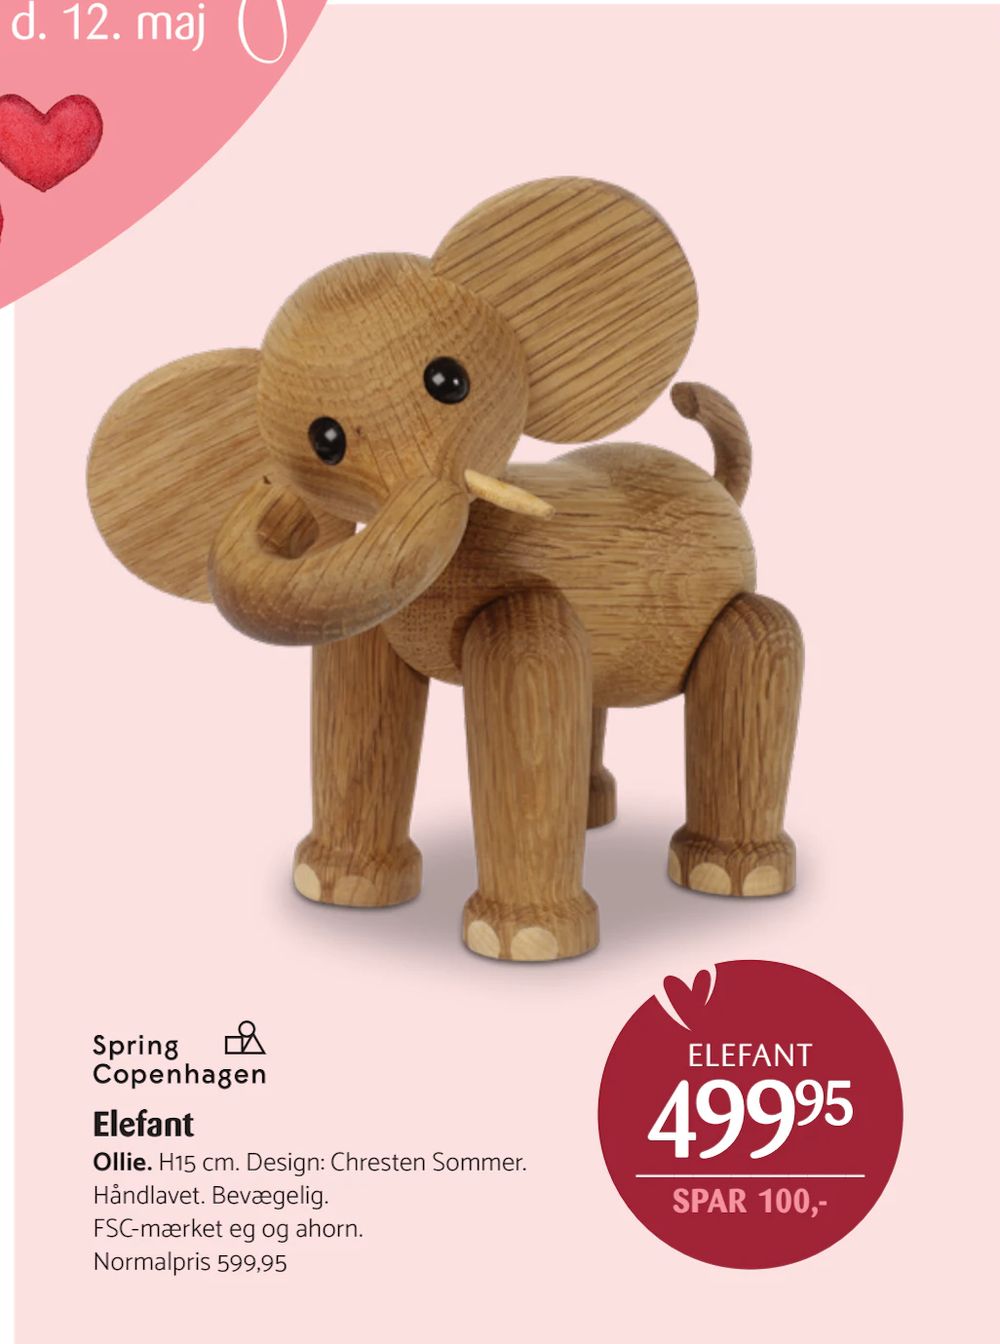 Tilbud på Elefant fra Kop & Kande til 499,95 kr.